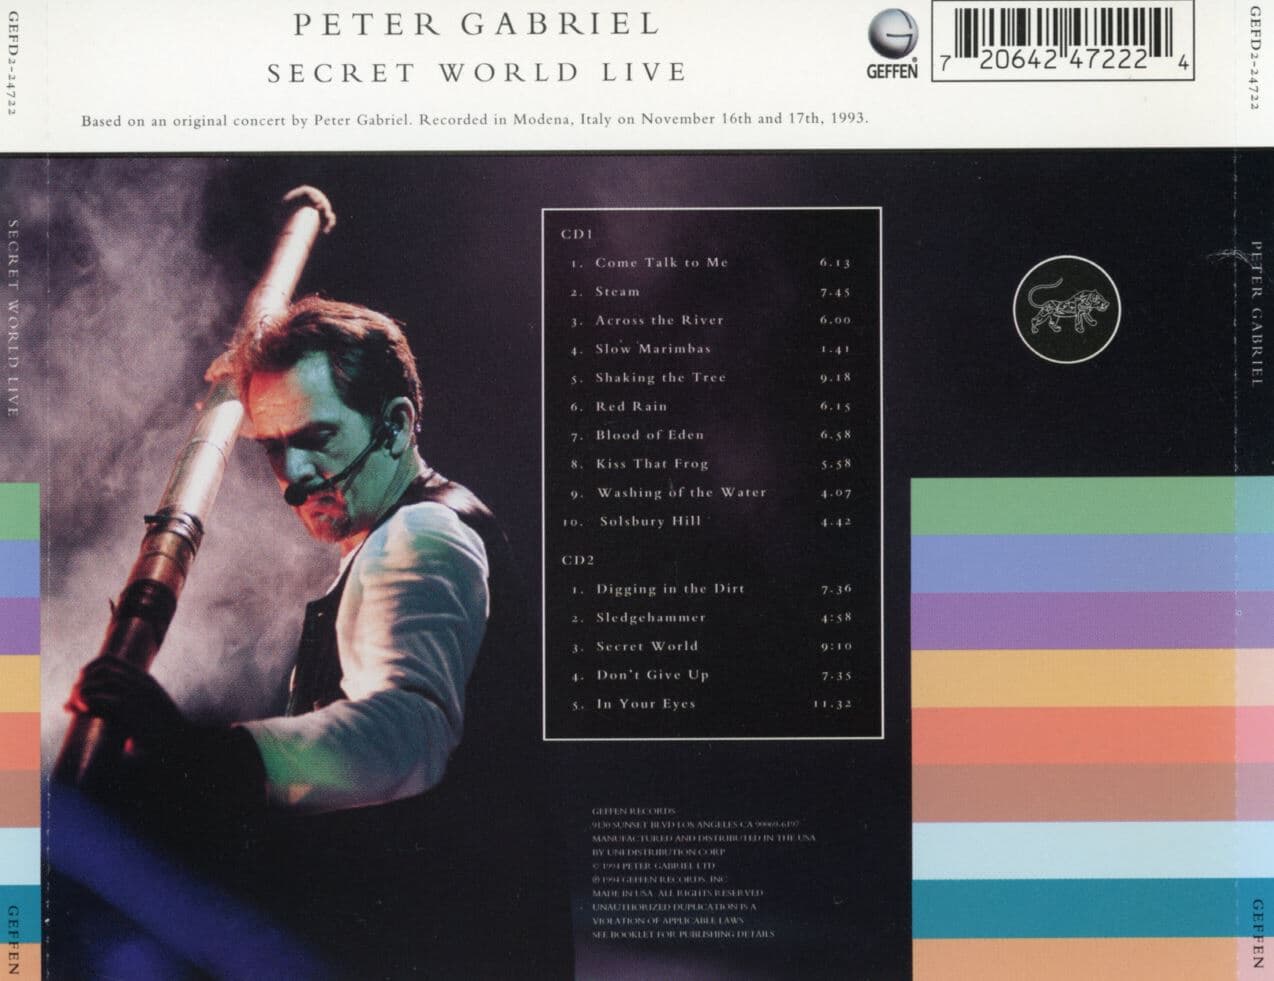 피터 가브리엘 - Peter Gabriel - Secret World Live 2Cds [U.S발매]